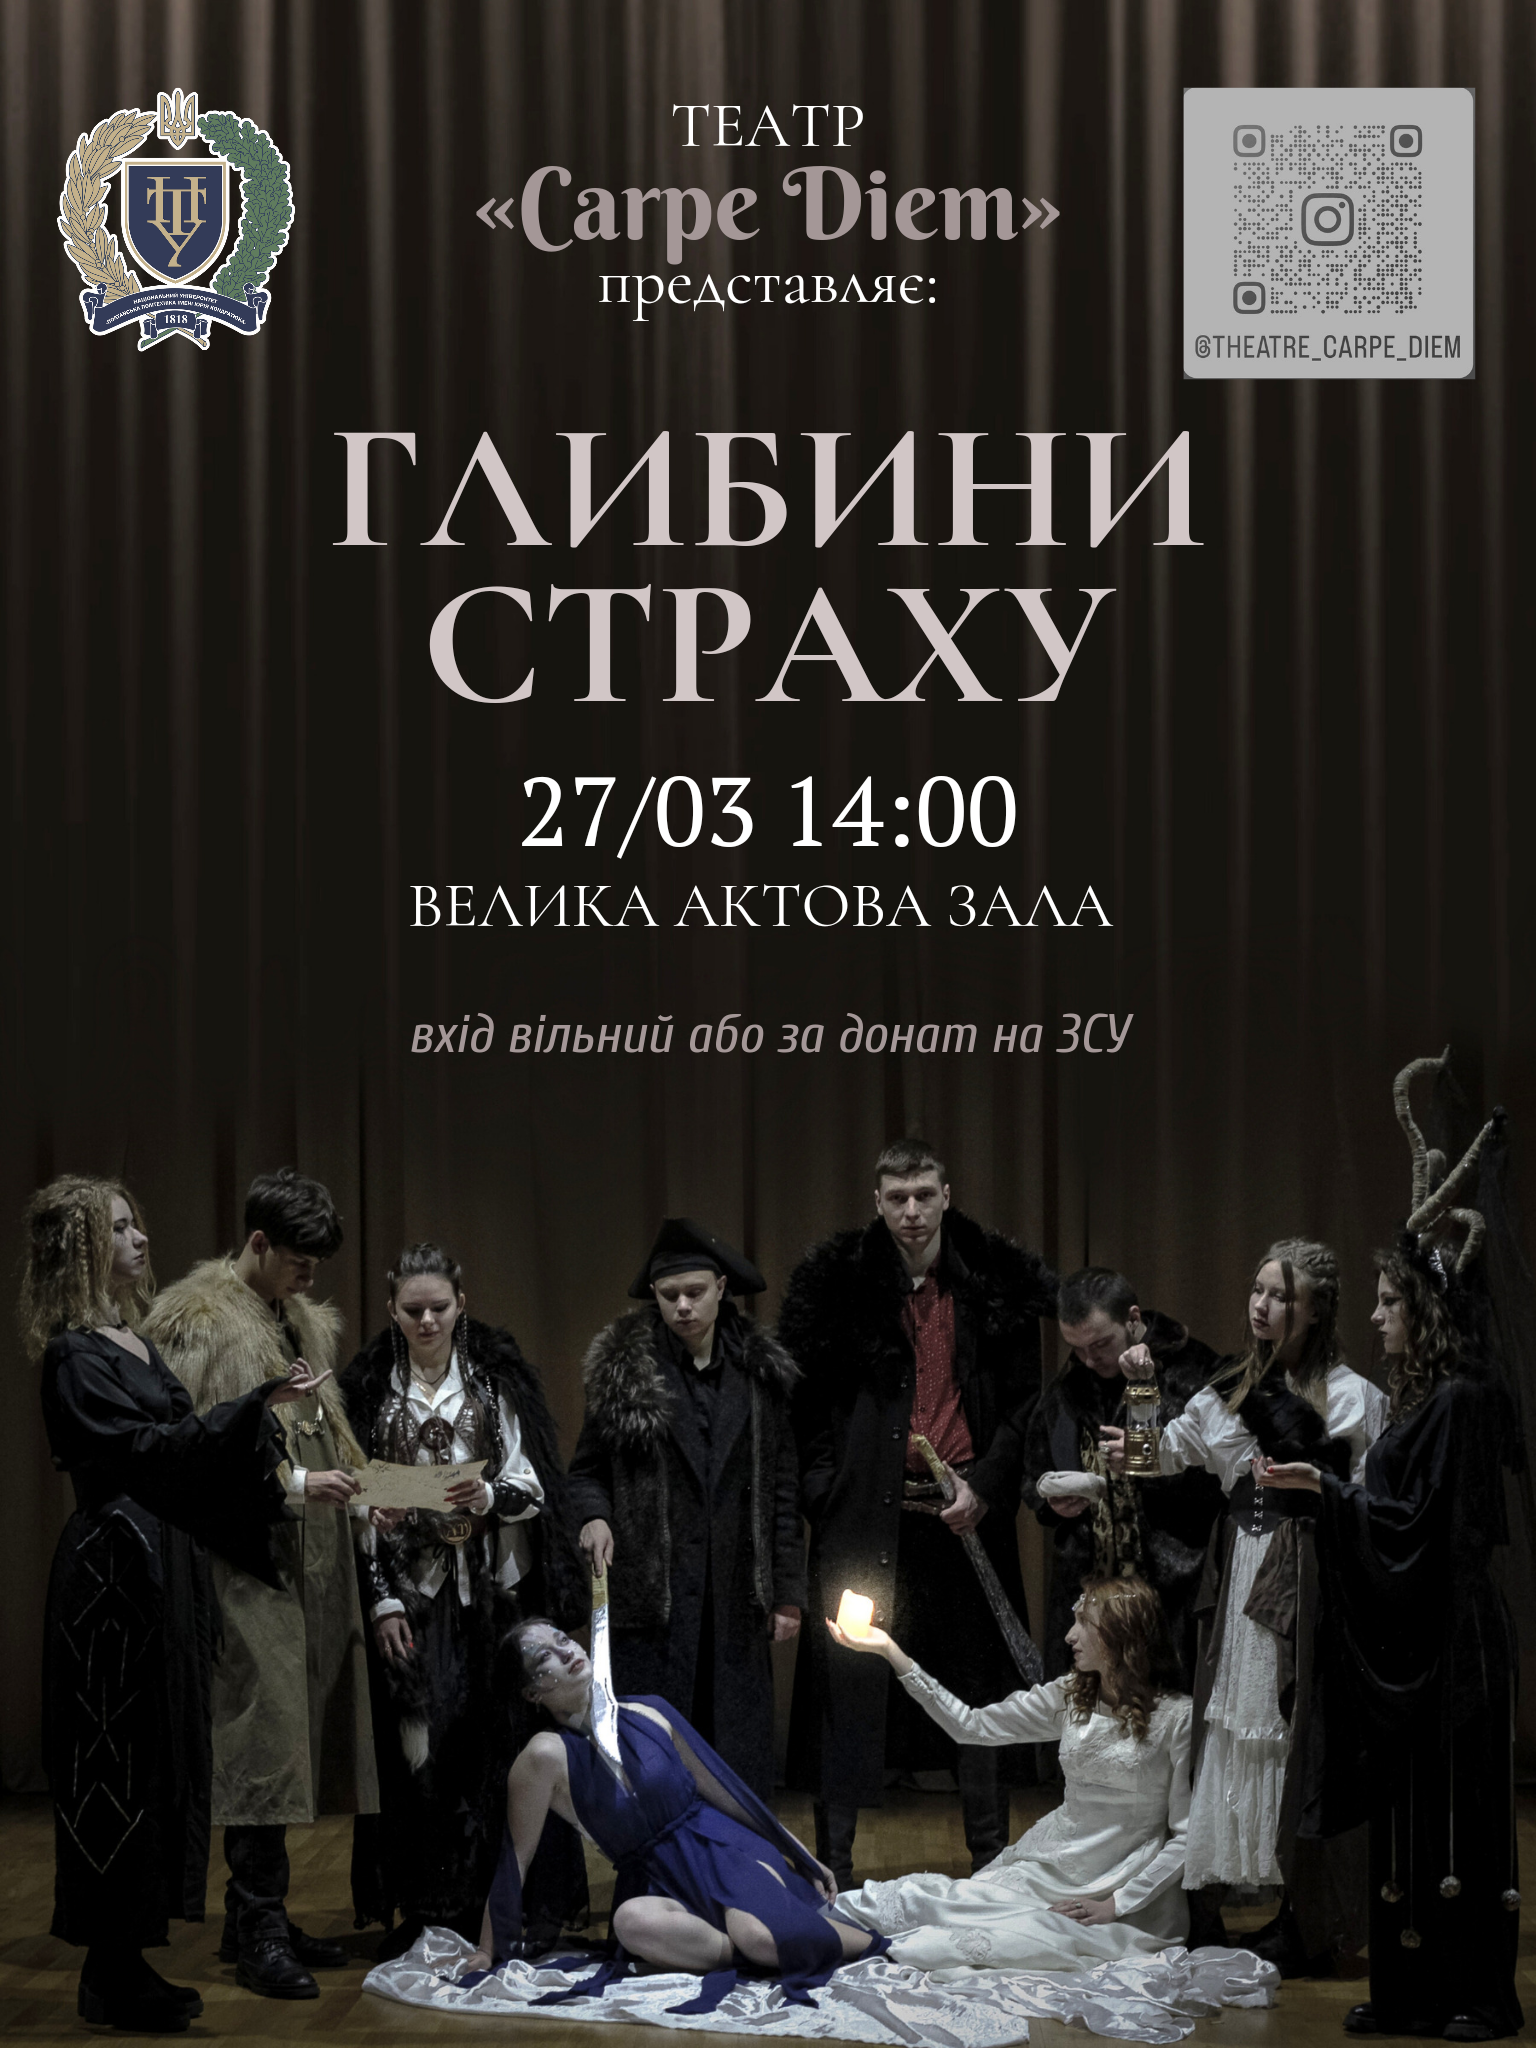 Студентський театр «Carpe Diem» запрошує на прем’єру